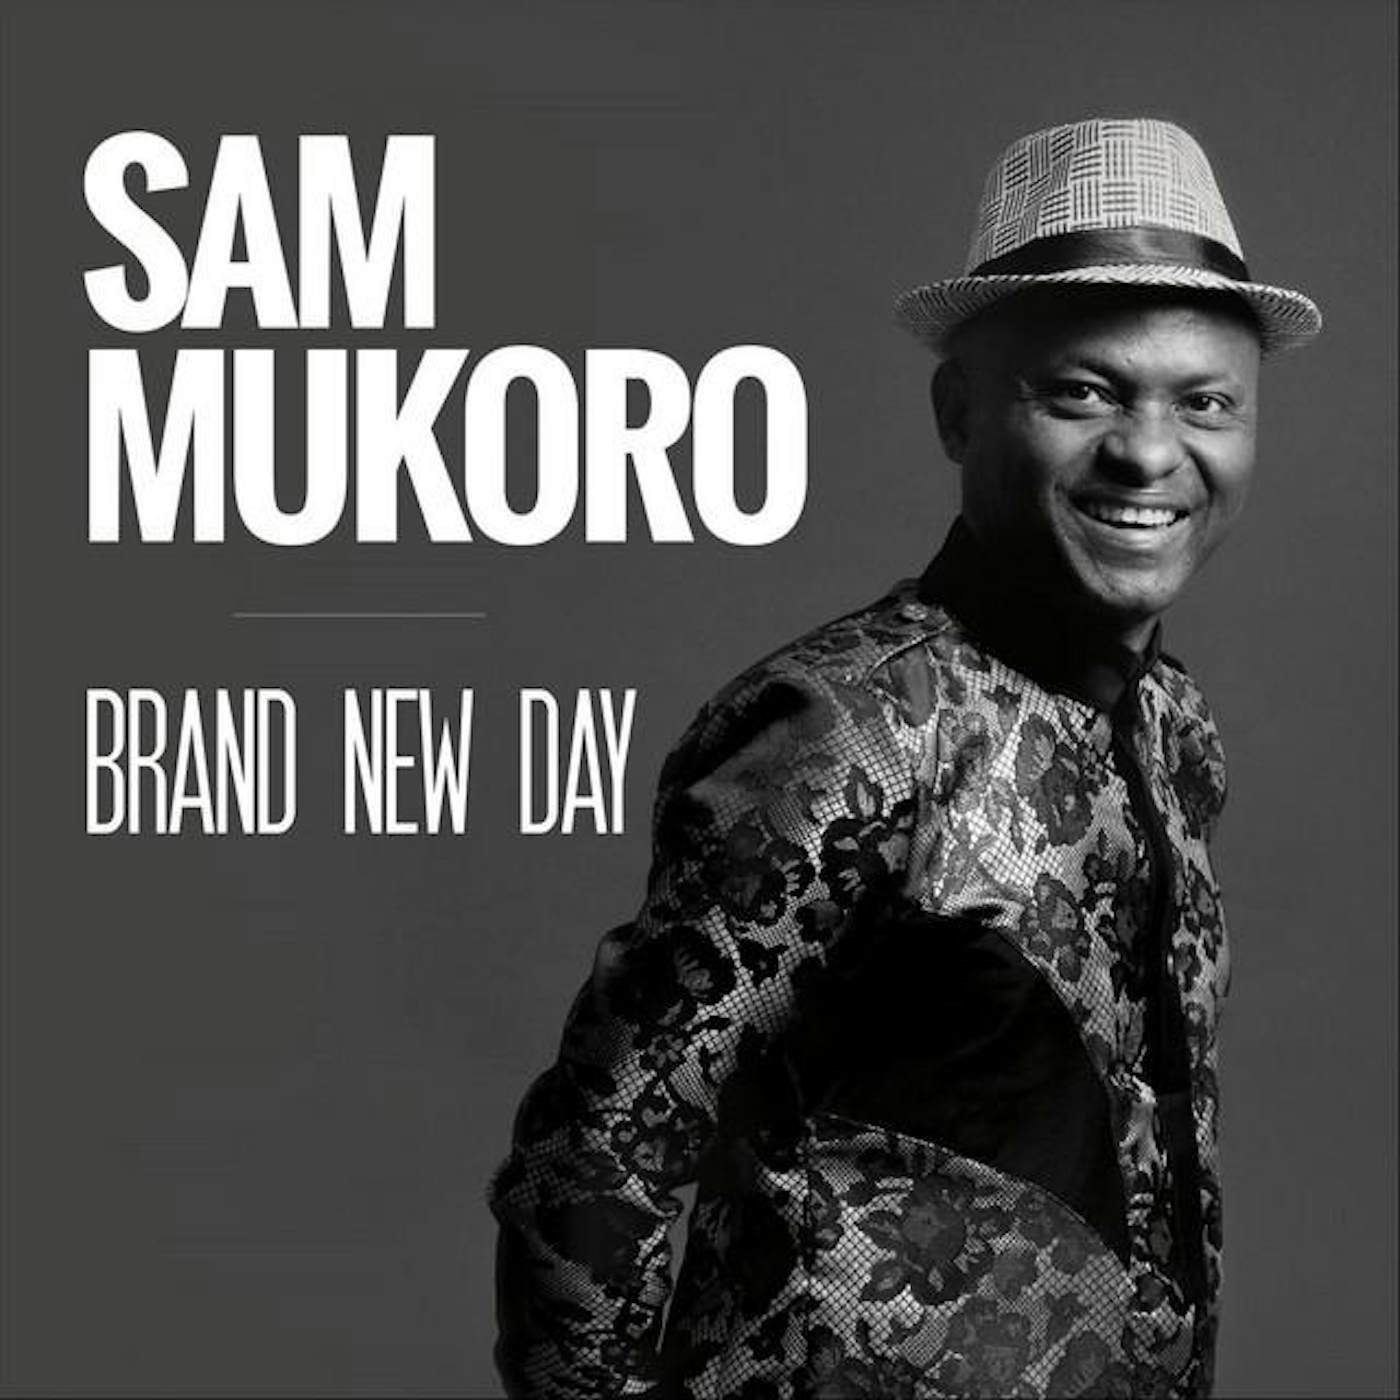 Sam Mukoro